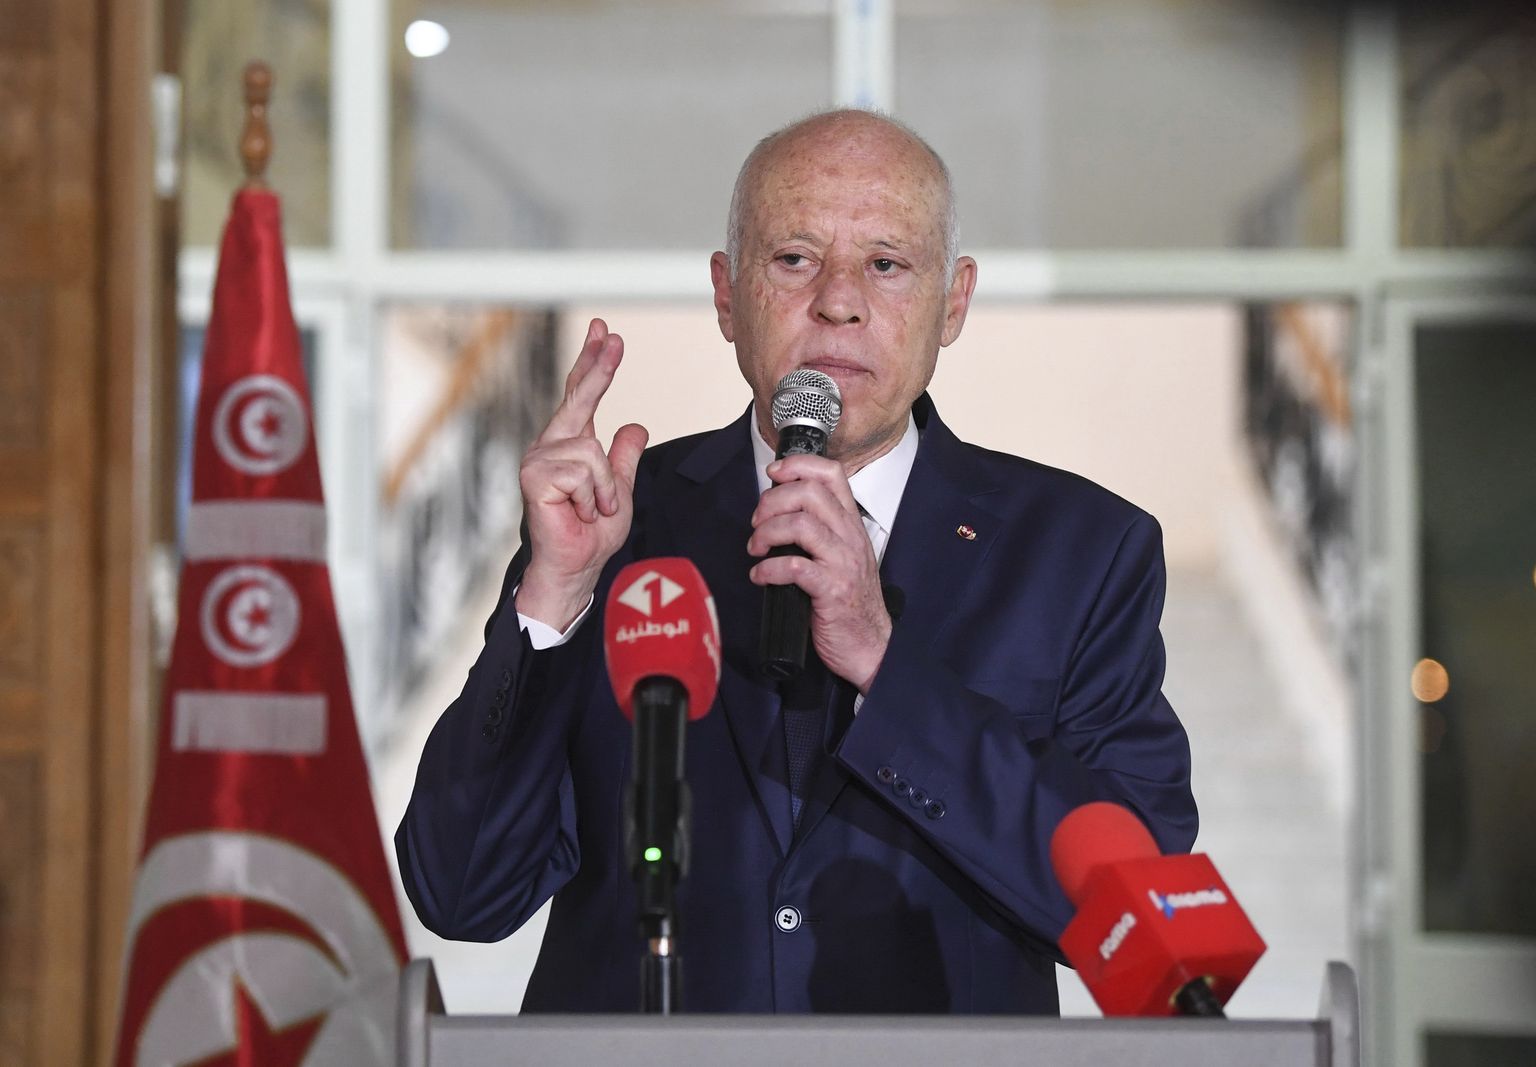 Tuneesia president Kais Saied, kes kindlustab parlamendivalimistega oma tunamulluse võimupöörde.